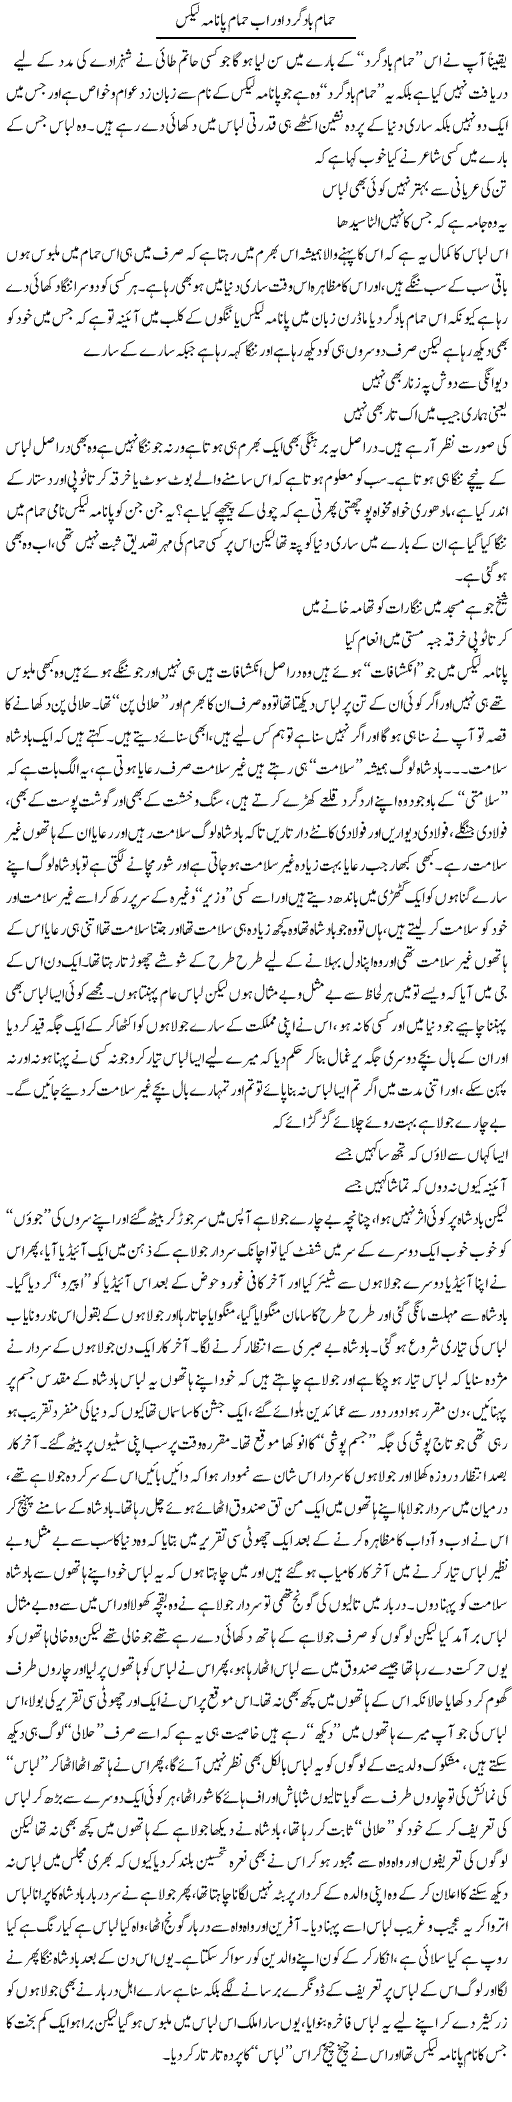 Hamaam Baad Gard Aor Ab Hamaam Panama Leaks | Saad Ullah Jan Barq | Daily Urdu Columns